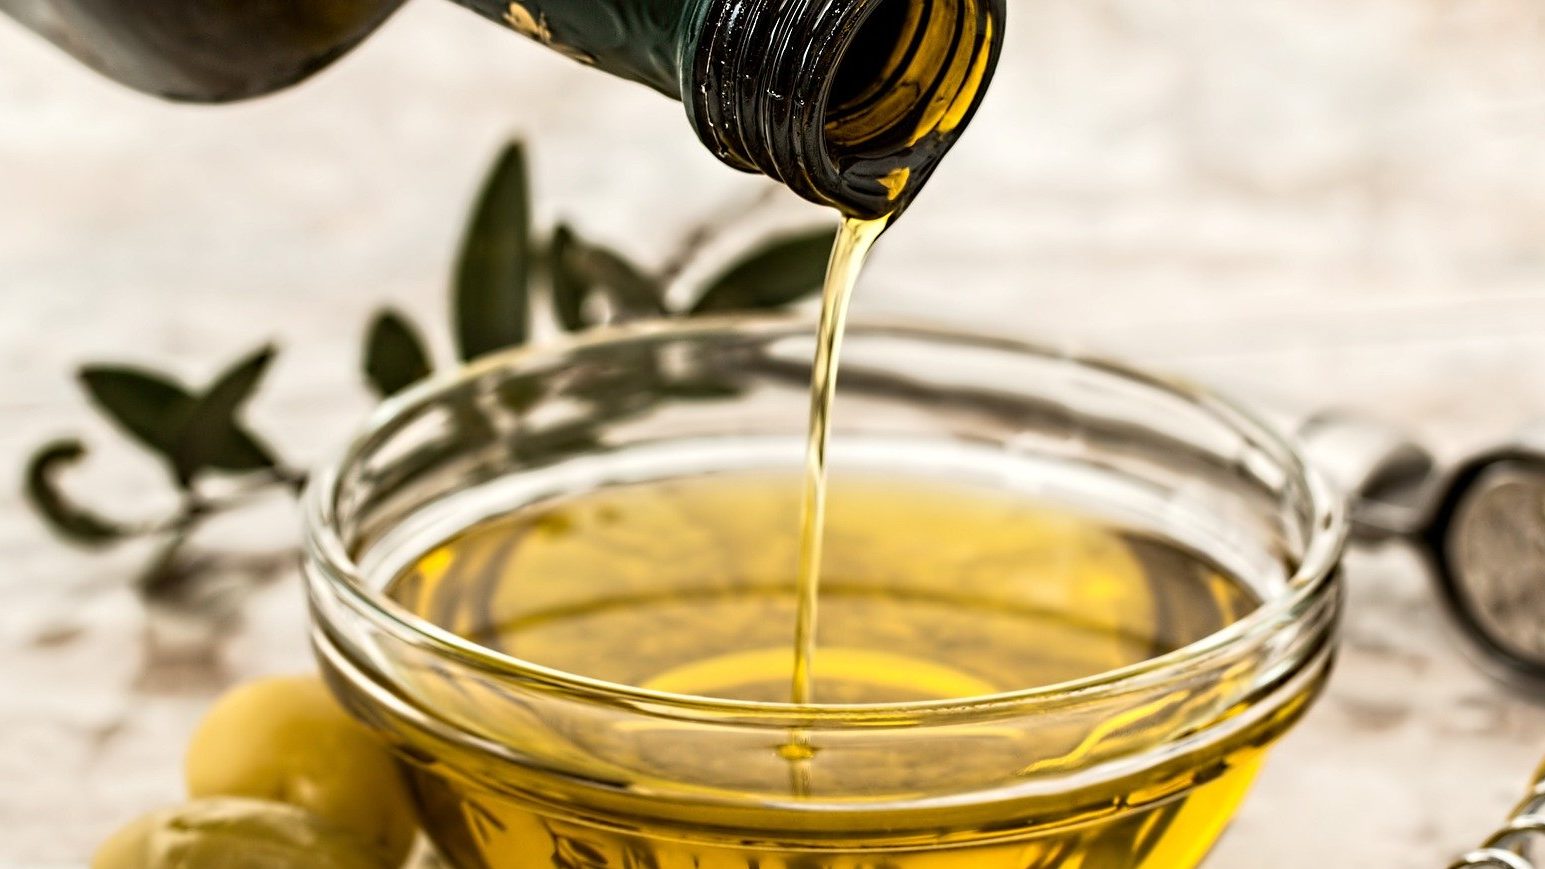 huile d'olive, coupelle avec de l'huile végétale, olives, filet d'huile, huiles végétales